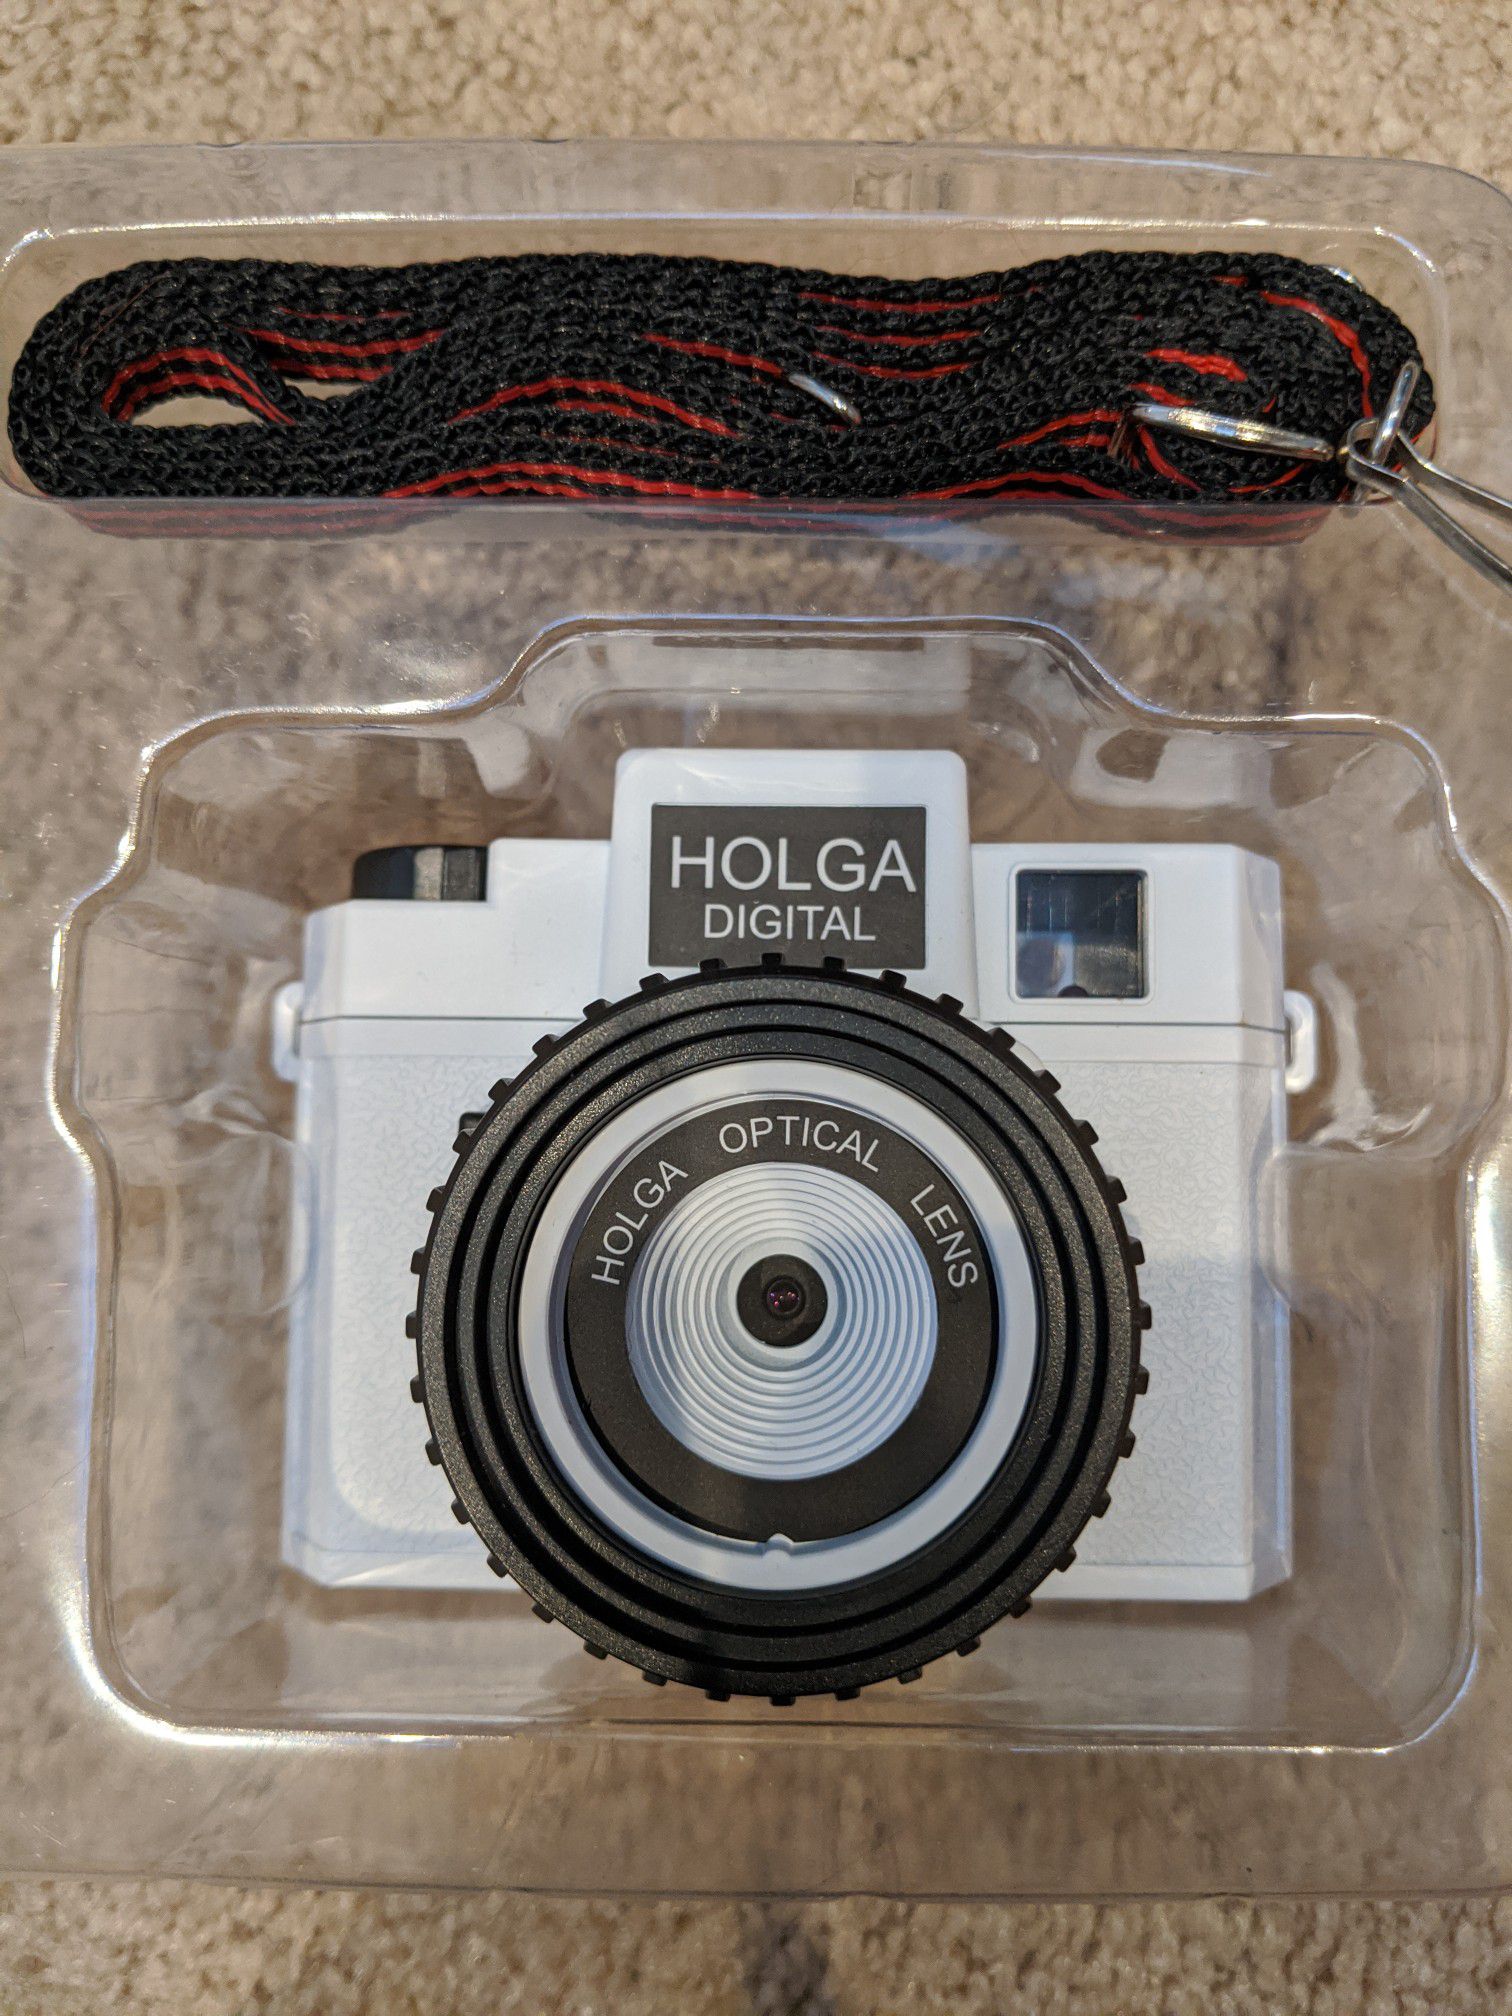 Holga digital camera